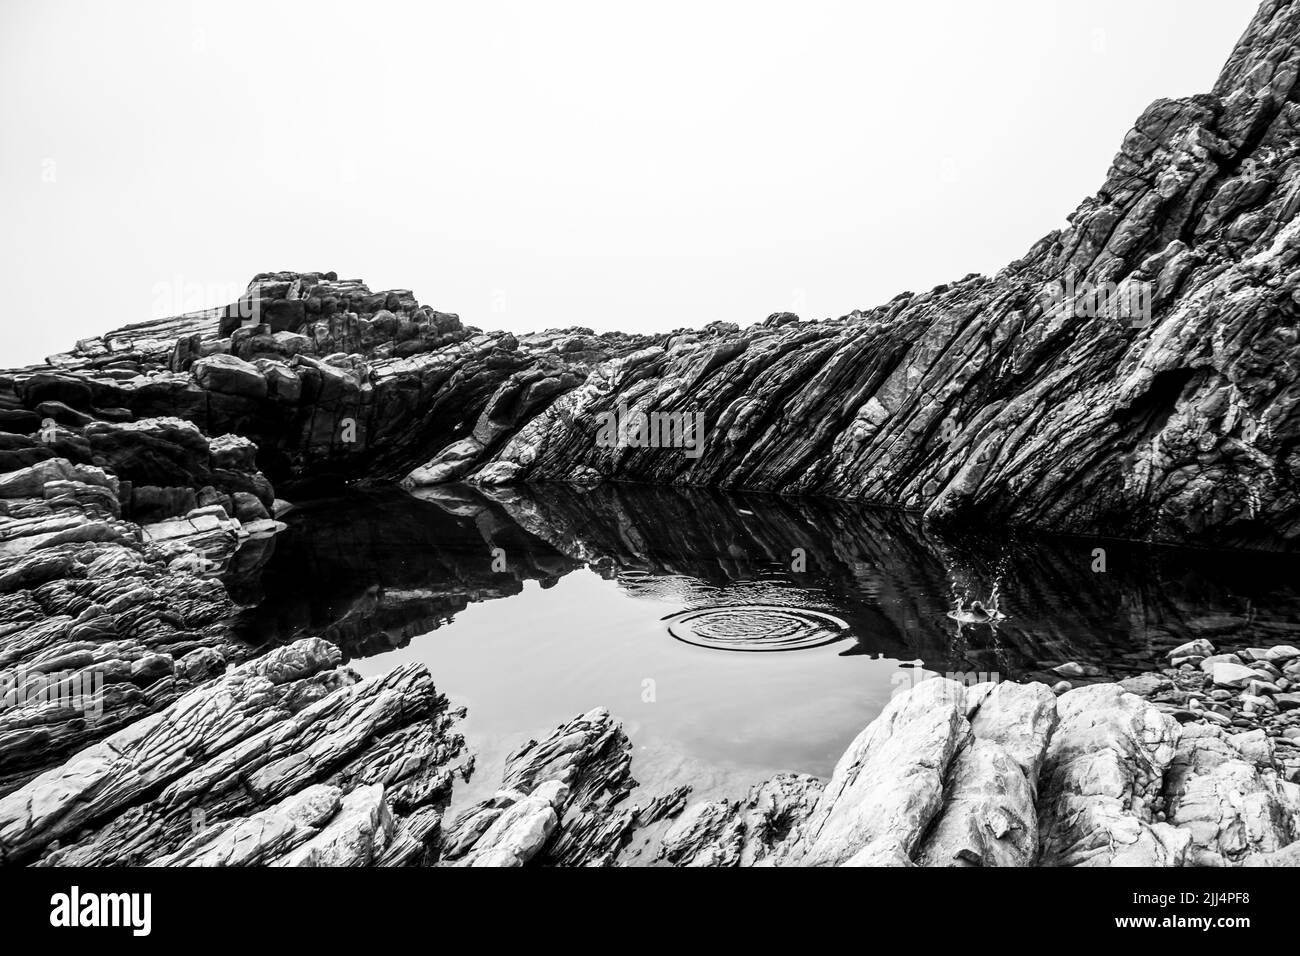 Überspringen von Felsen an einem geschützten, ruhigen Felsenpool zwischen den gekippten, zerklüfteten Felsen der Küste von Tsitsikamma, Südafrika, in Schwarz und Weiß Stockfoto